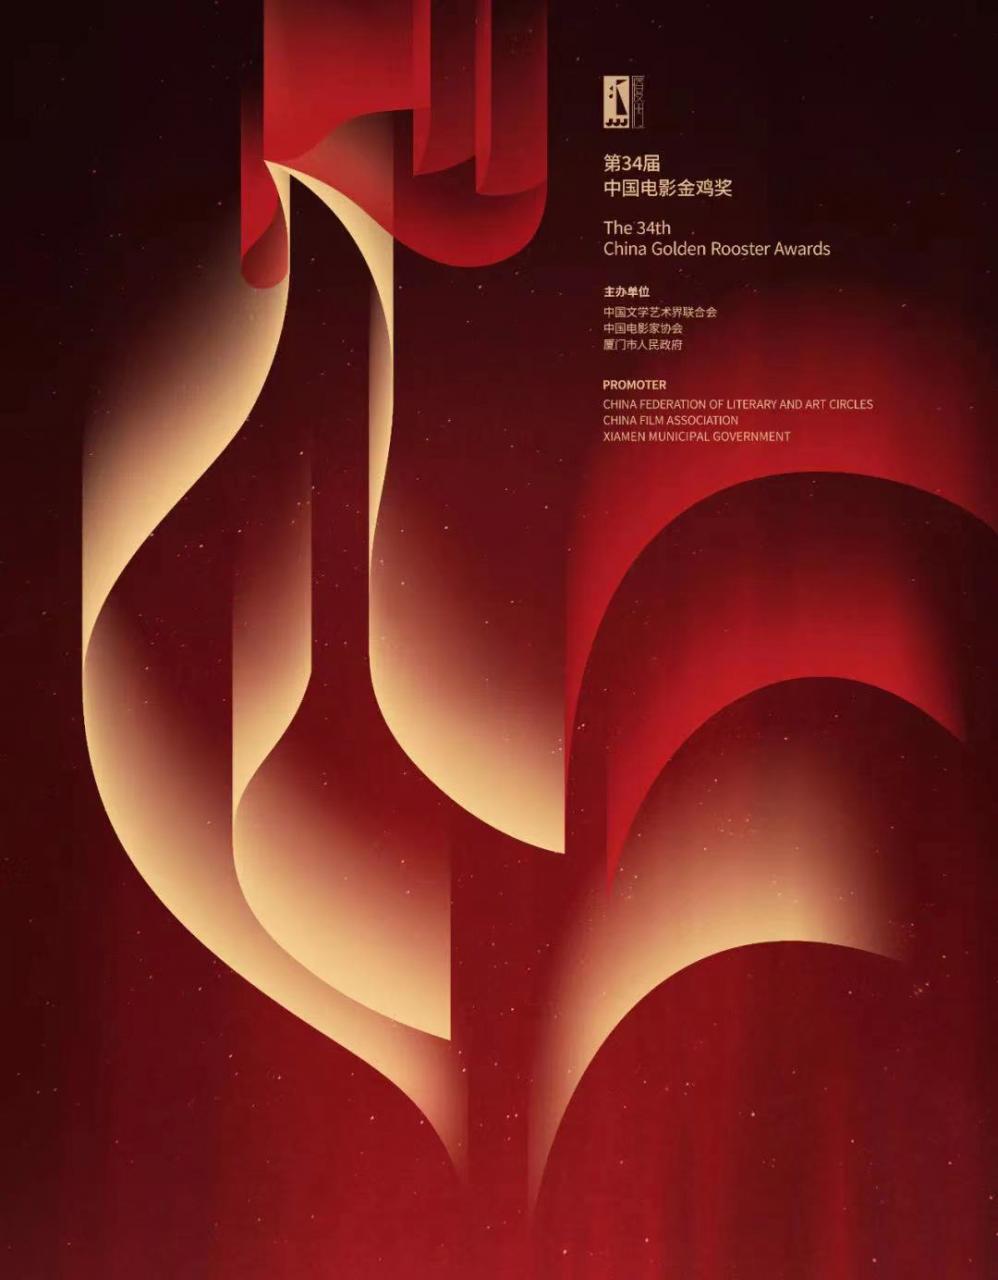 《雄雞凝視》等作品入圍第34屆中國電影金雞獎海報設計大賽-圖1